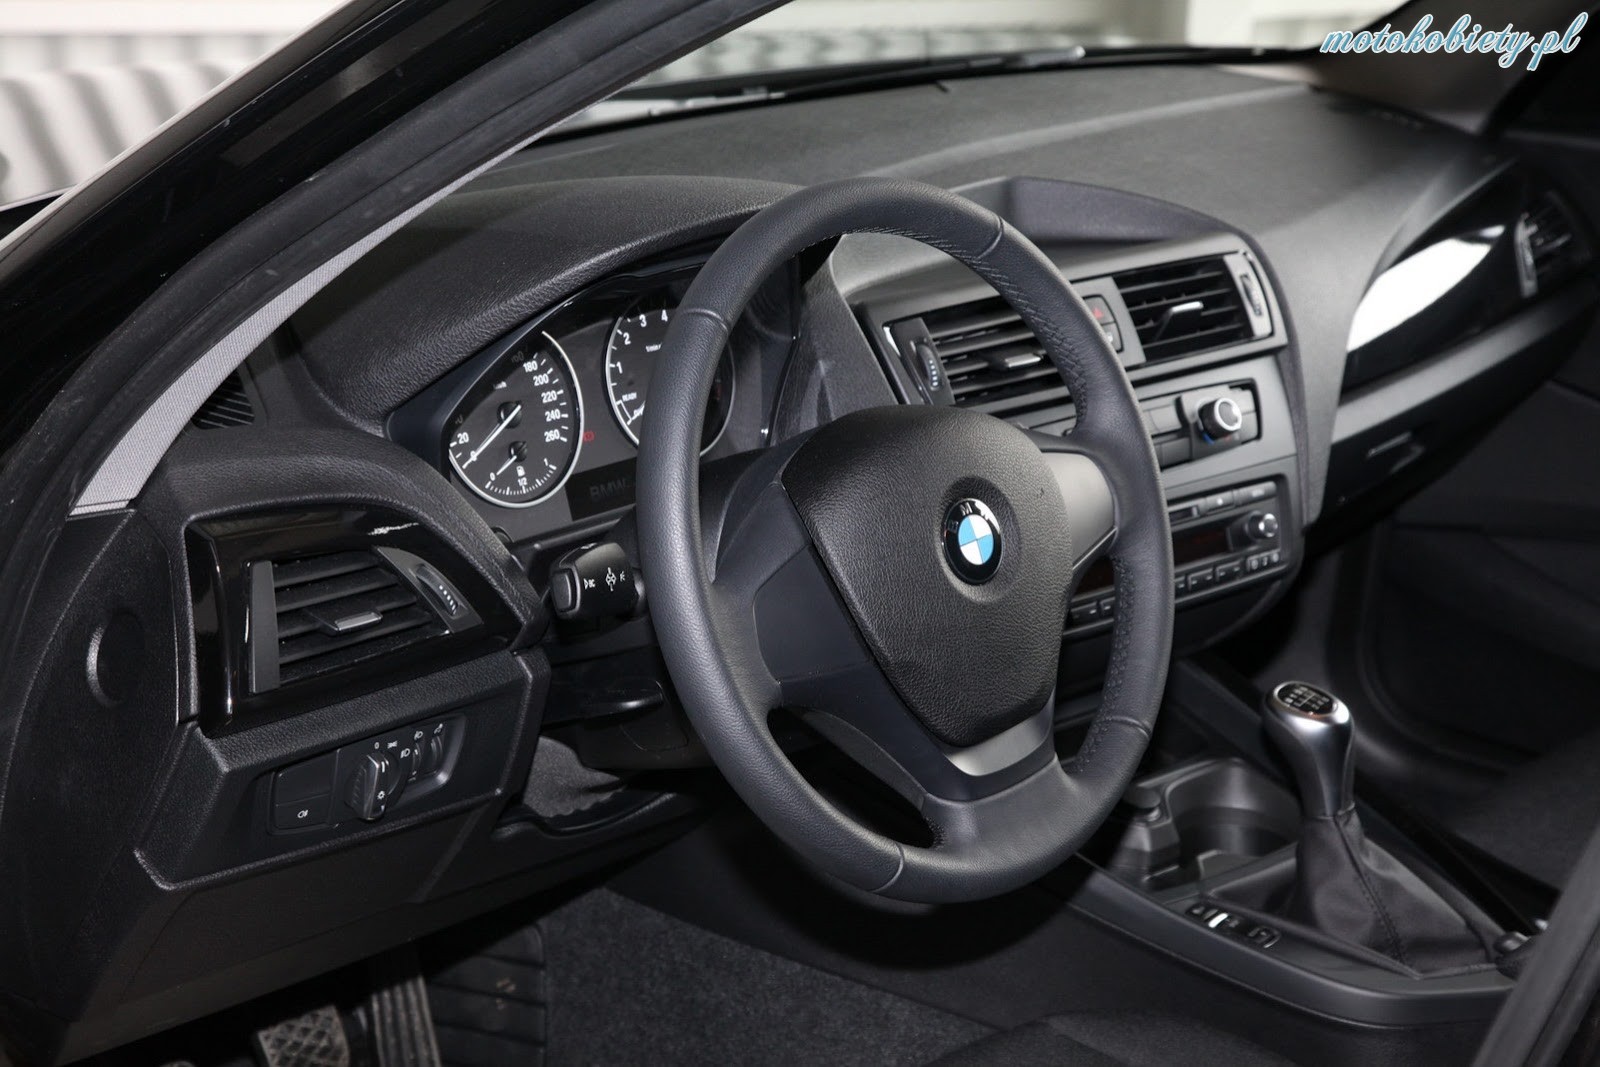 BMW 116i KTW Tuning